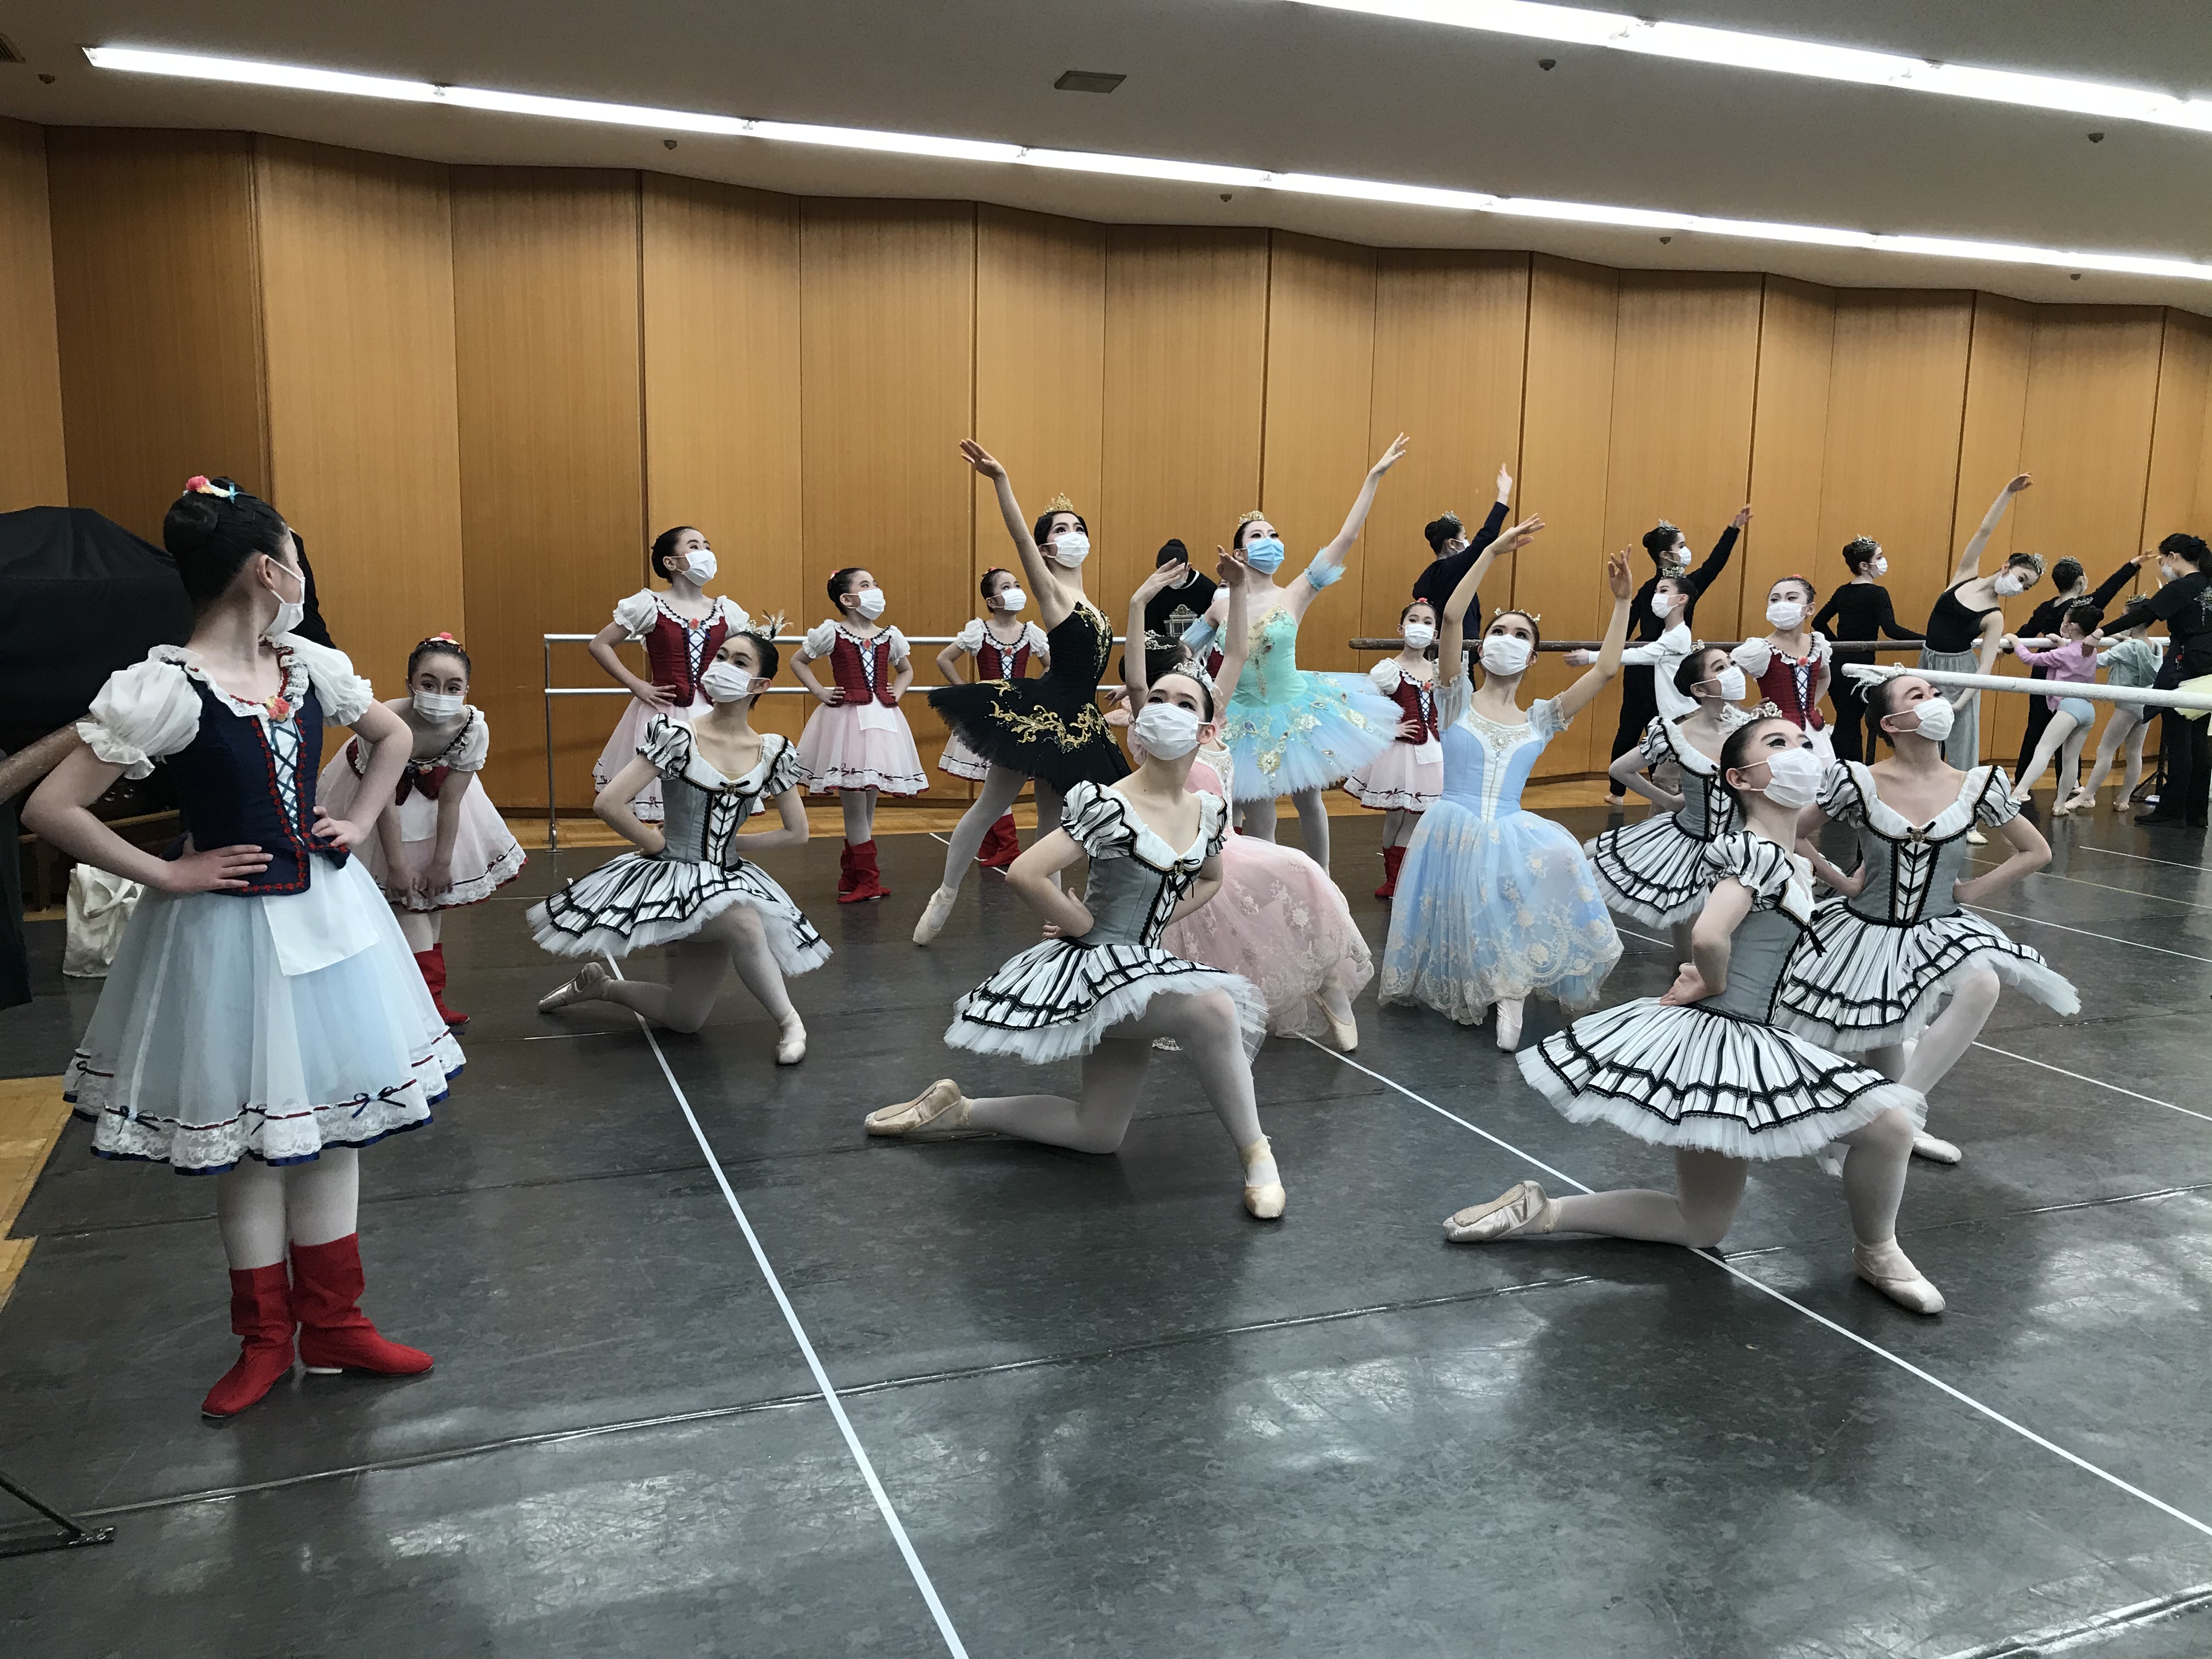 愛バレエスタジオ 松山バレエ学校 浦和支部 人にやさしく バレエにきびしく